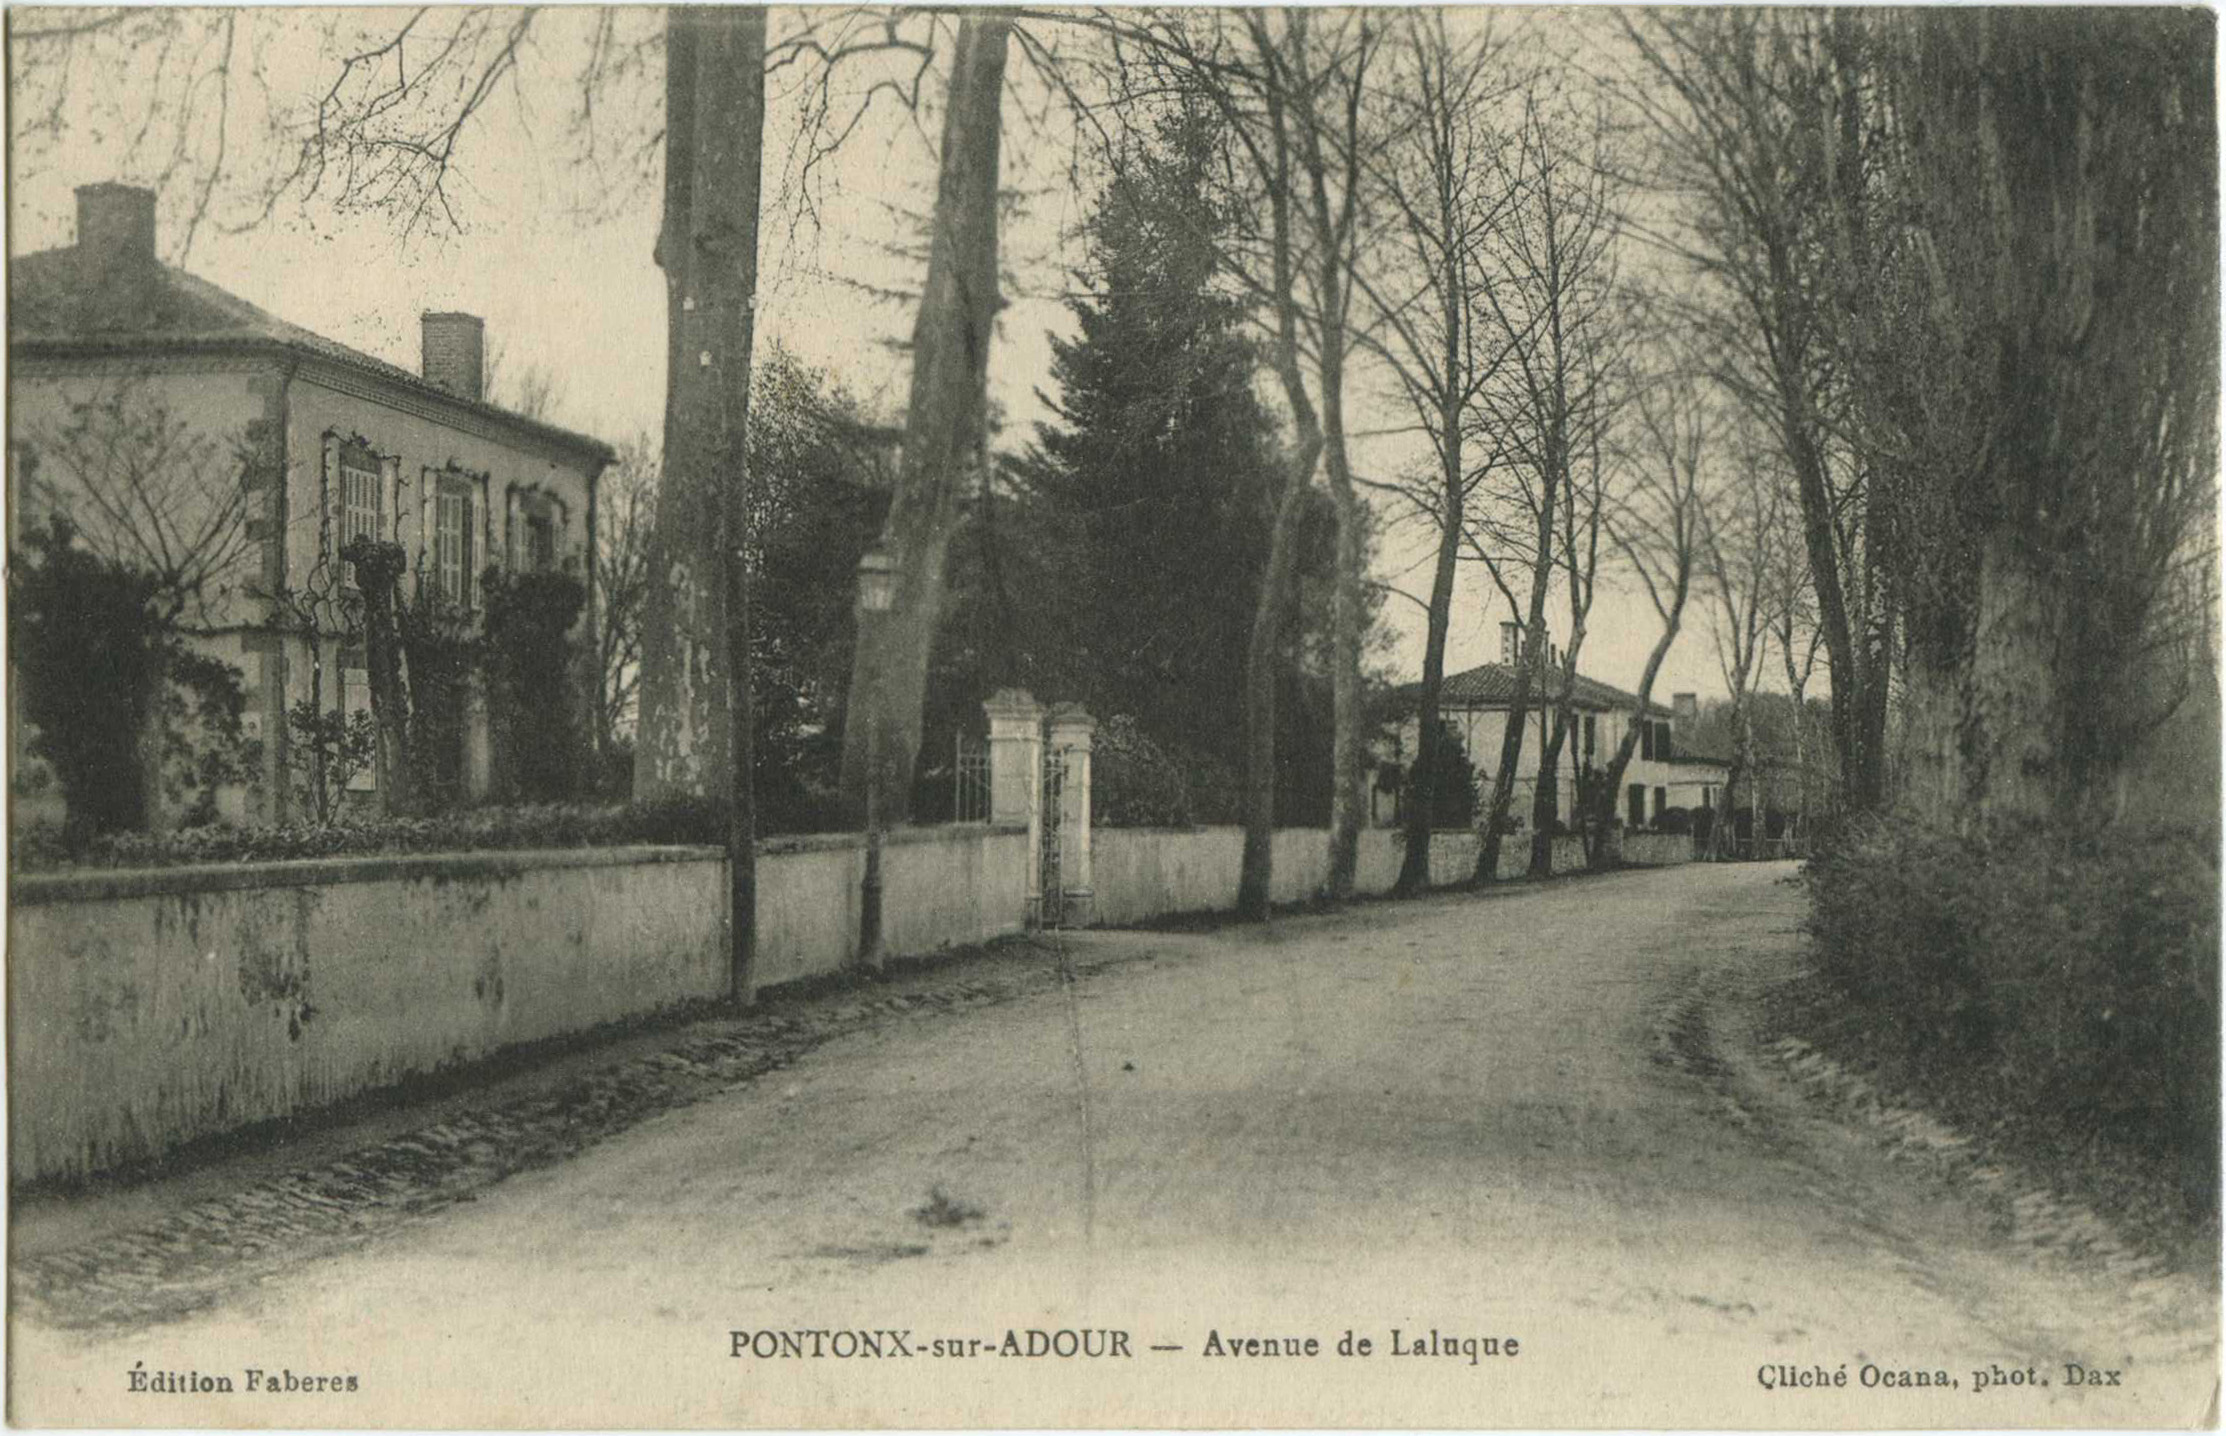 Pontonx-sur-l'Adour - Avenue de Laluque